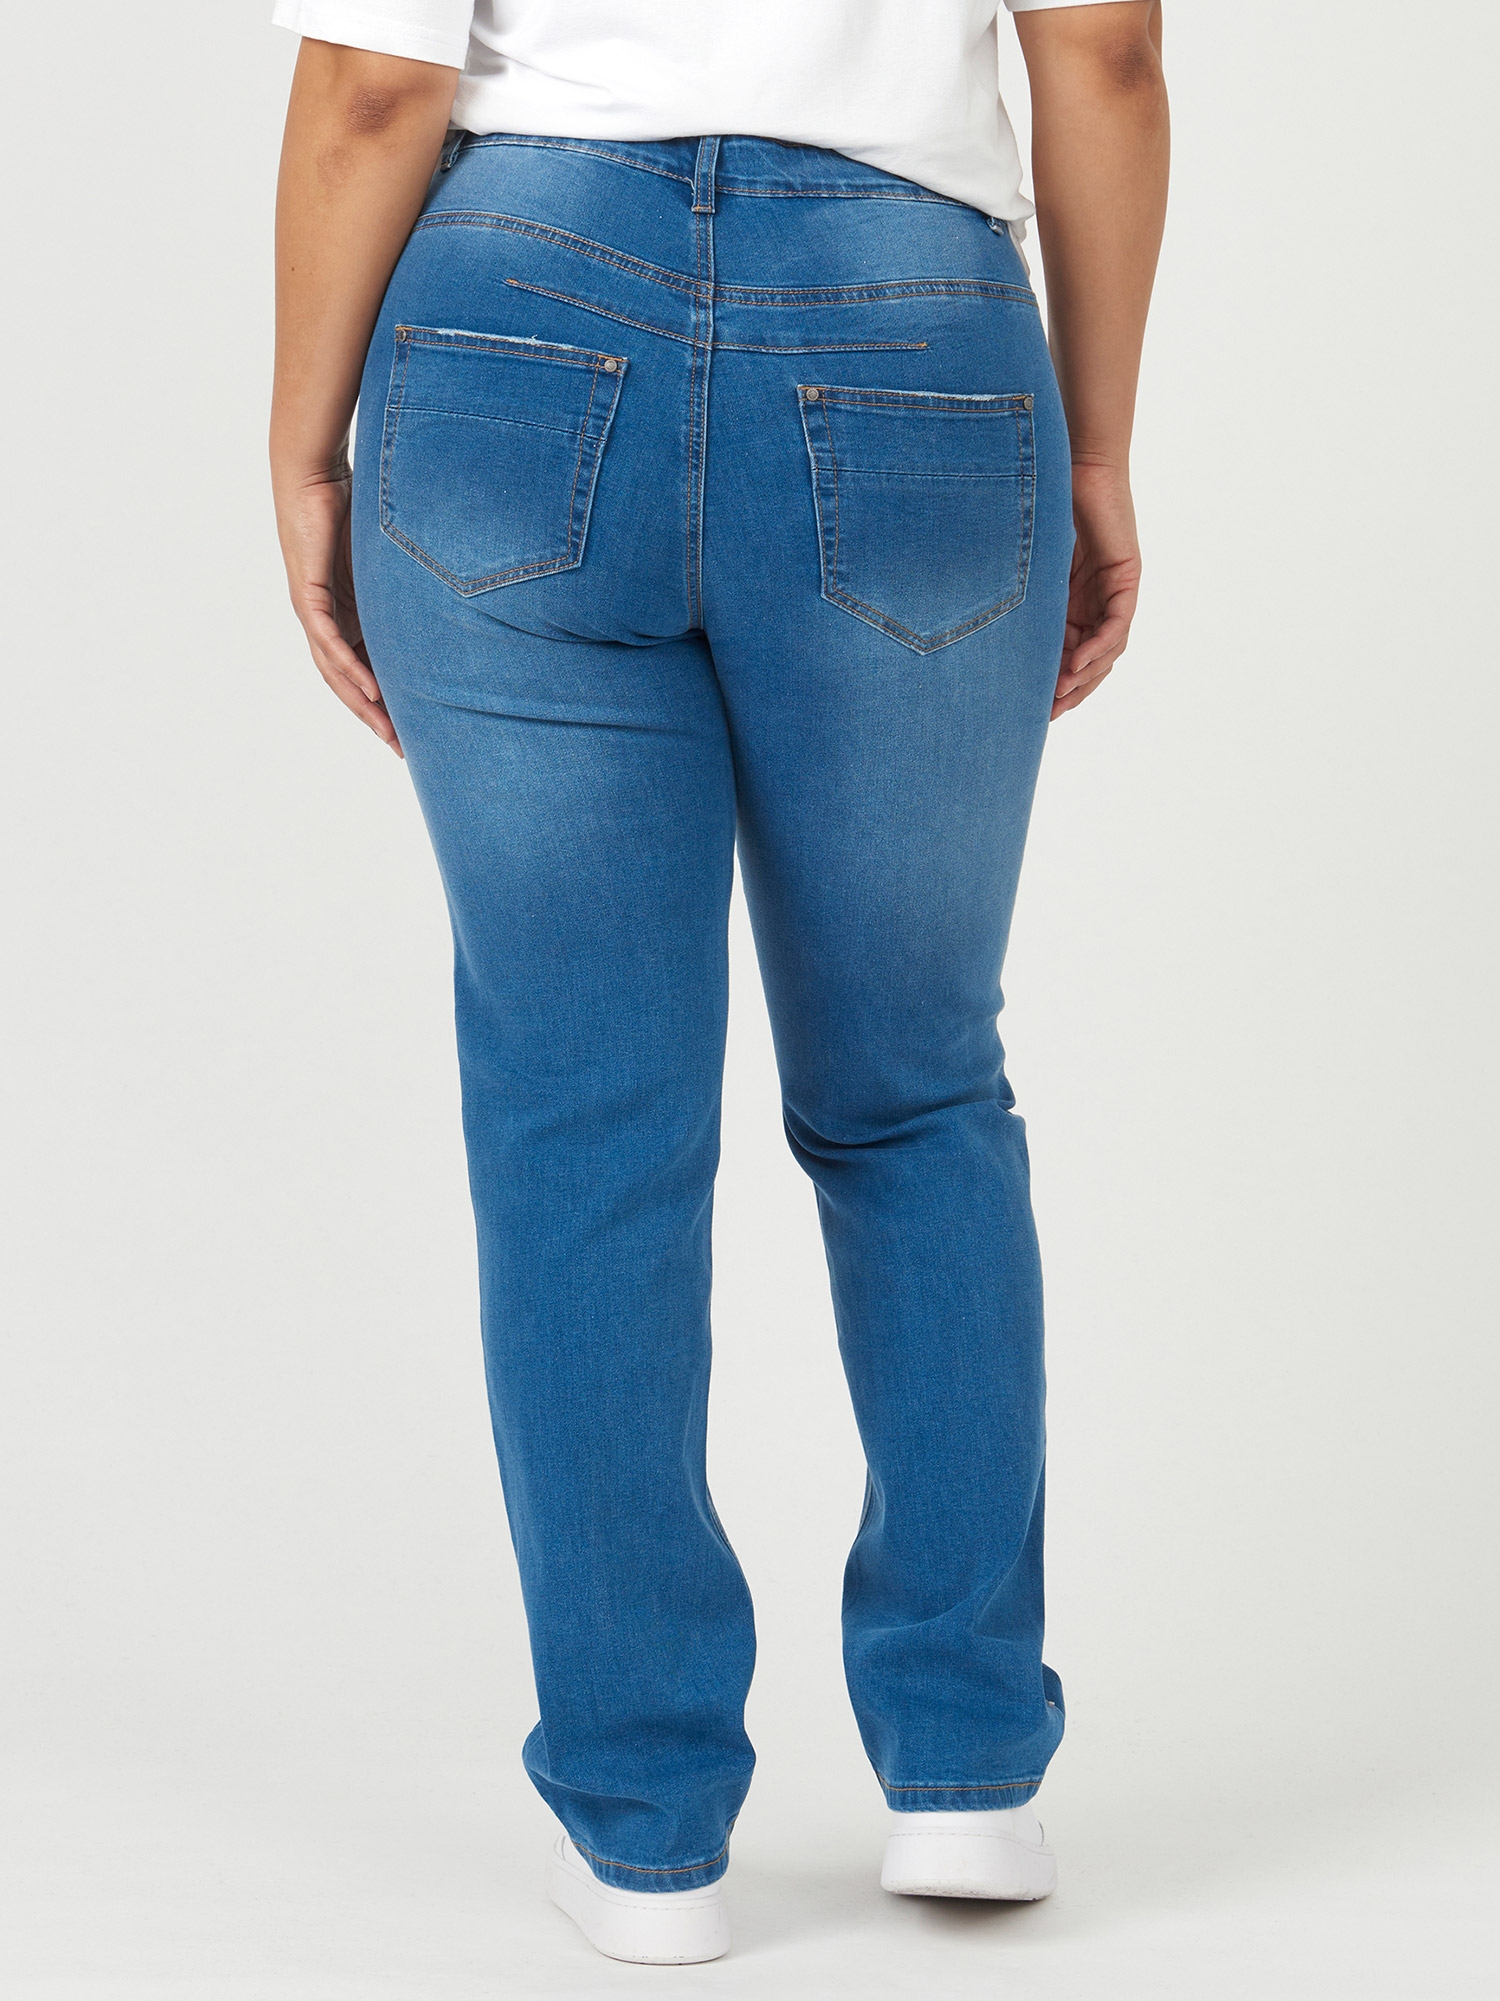 MONACO - Lyse strækbar jeans med høj talje fra Adia